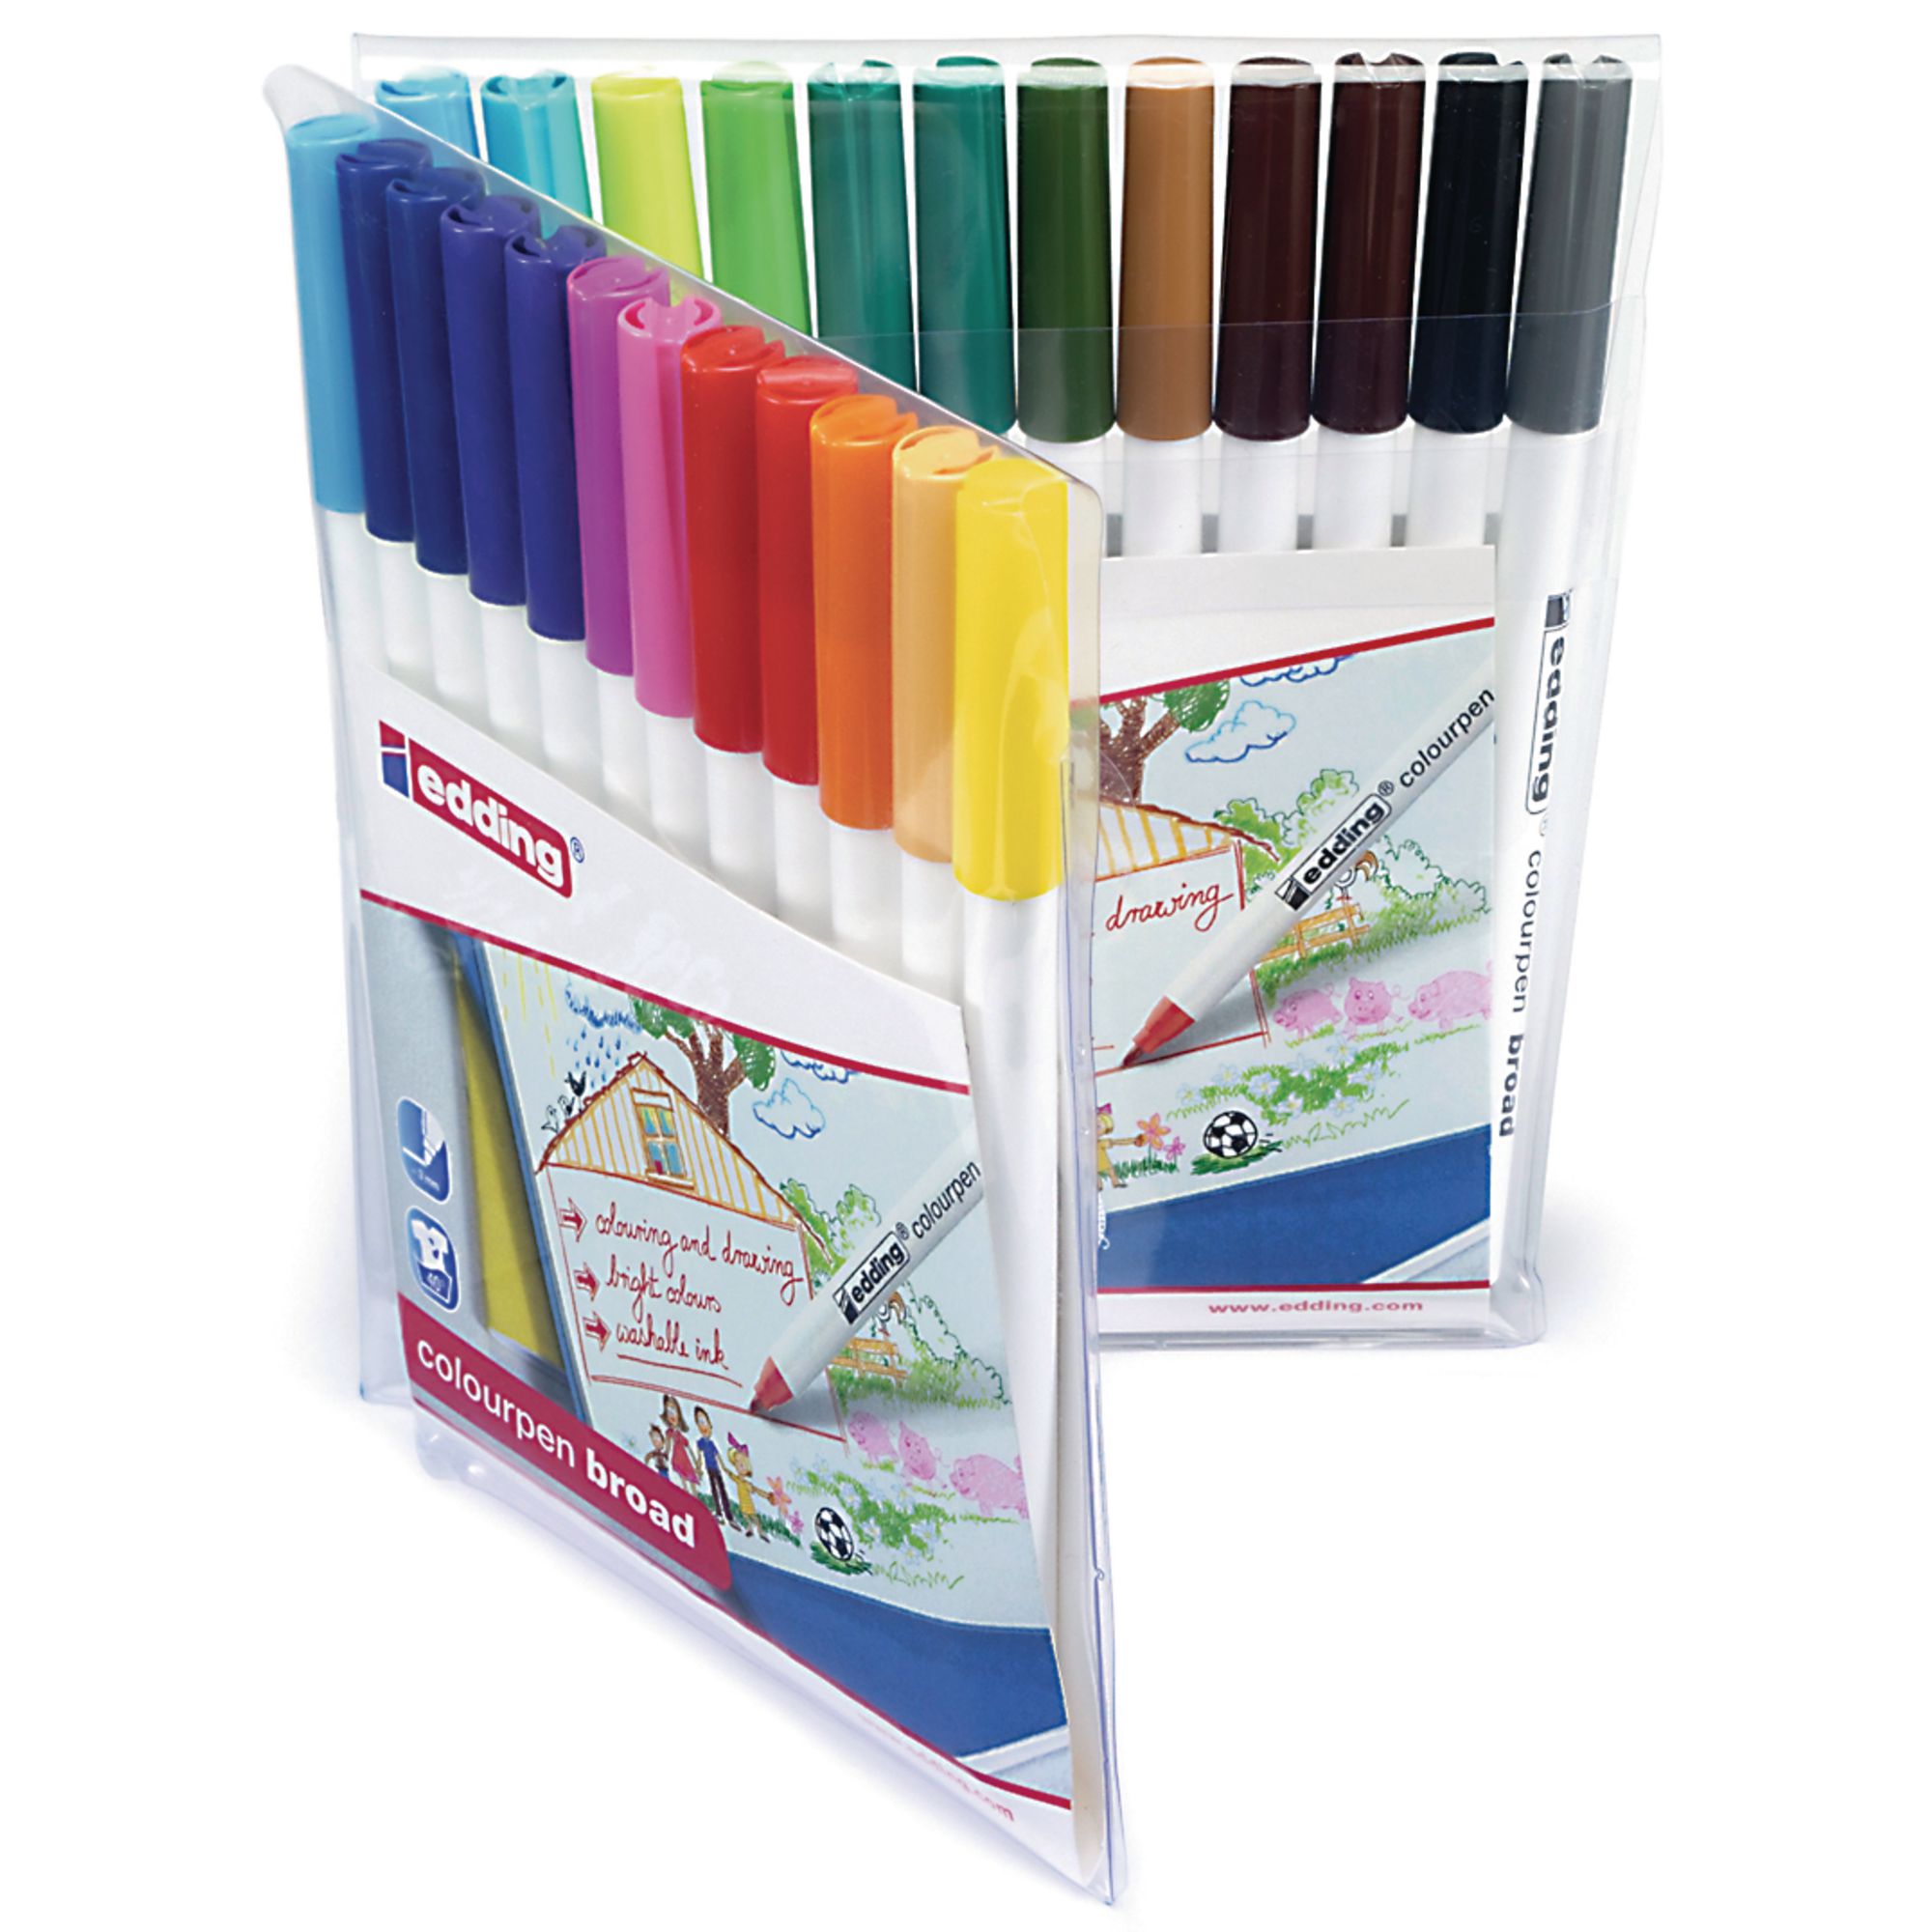 Edding Colour Pen Broad Ass P24